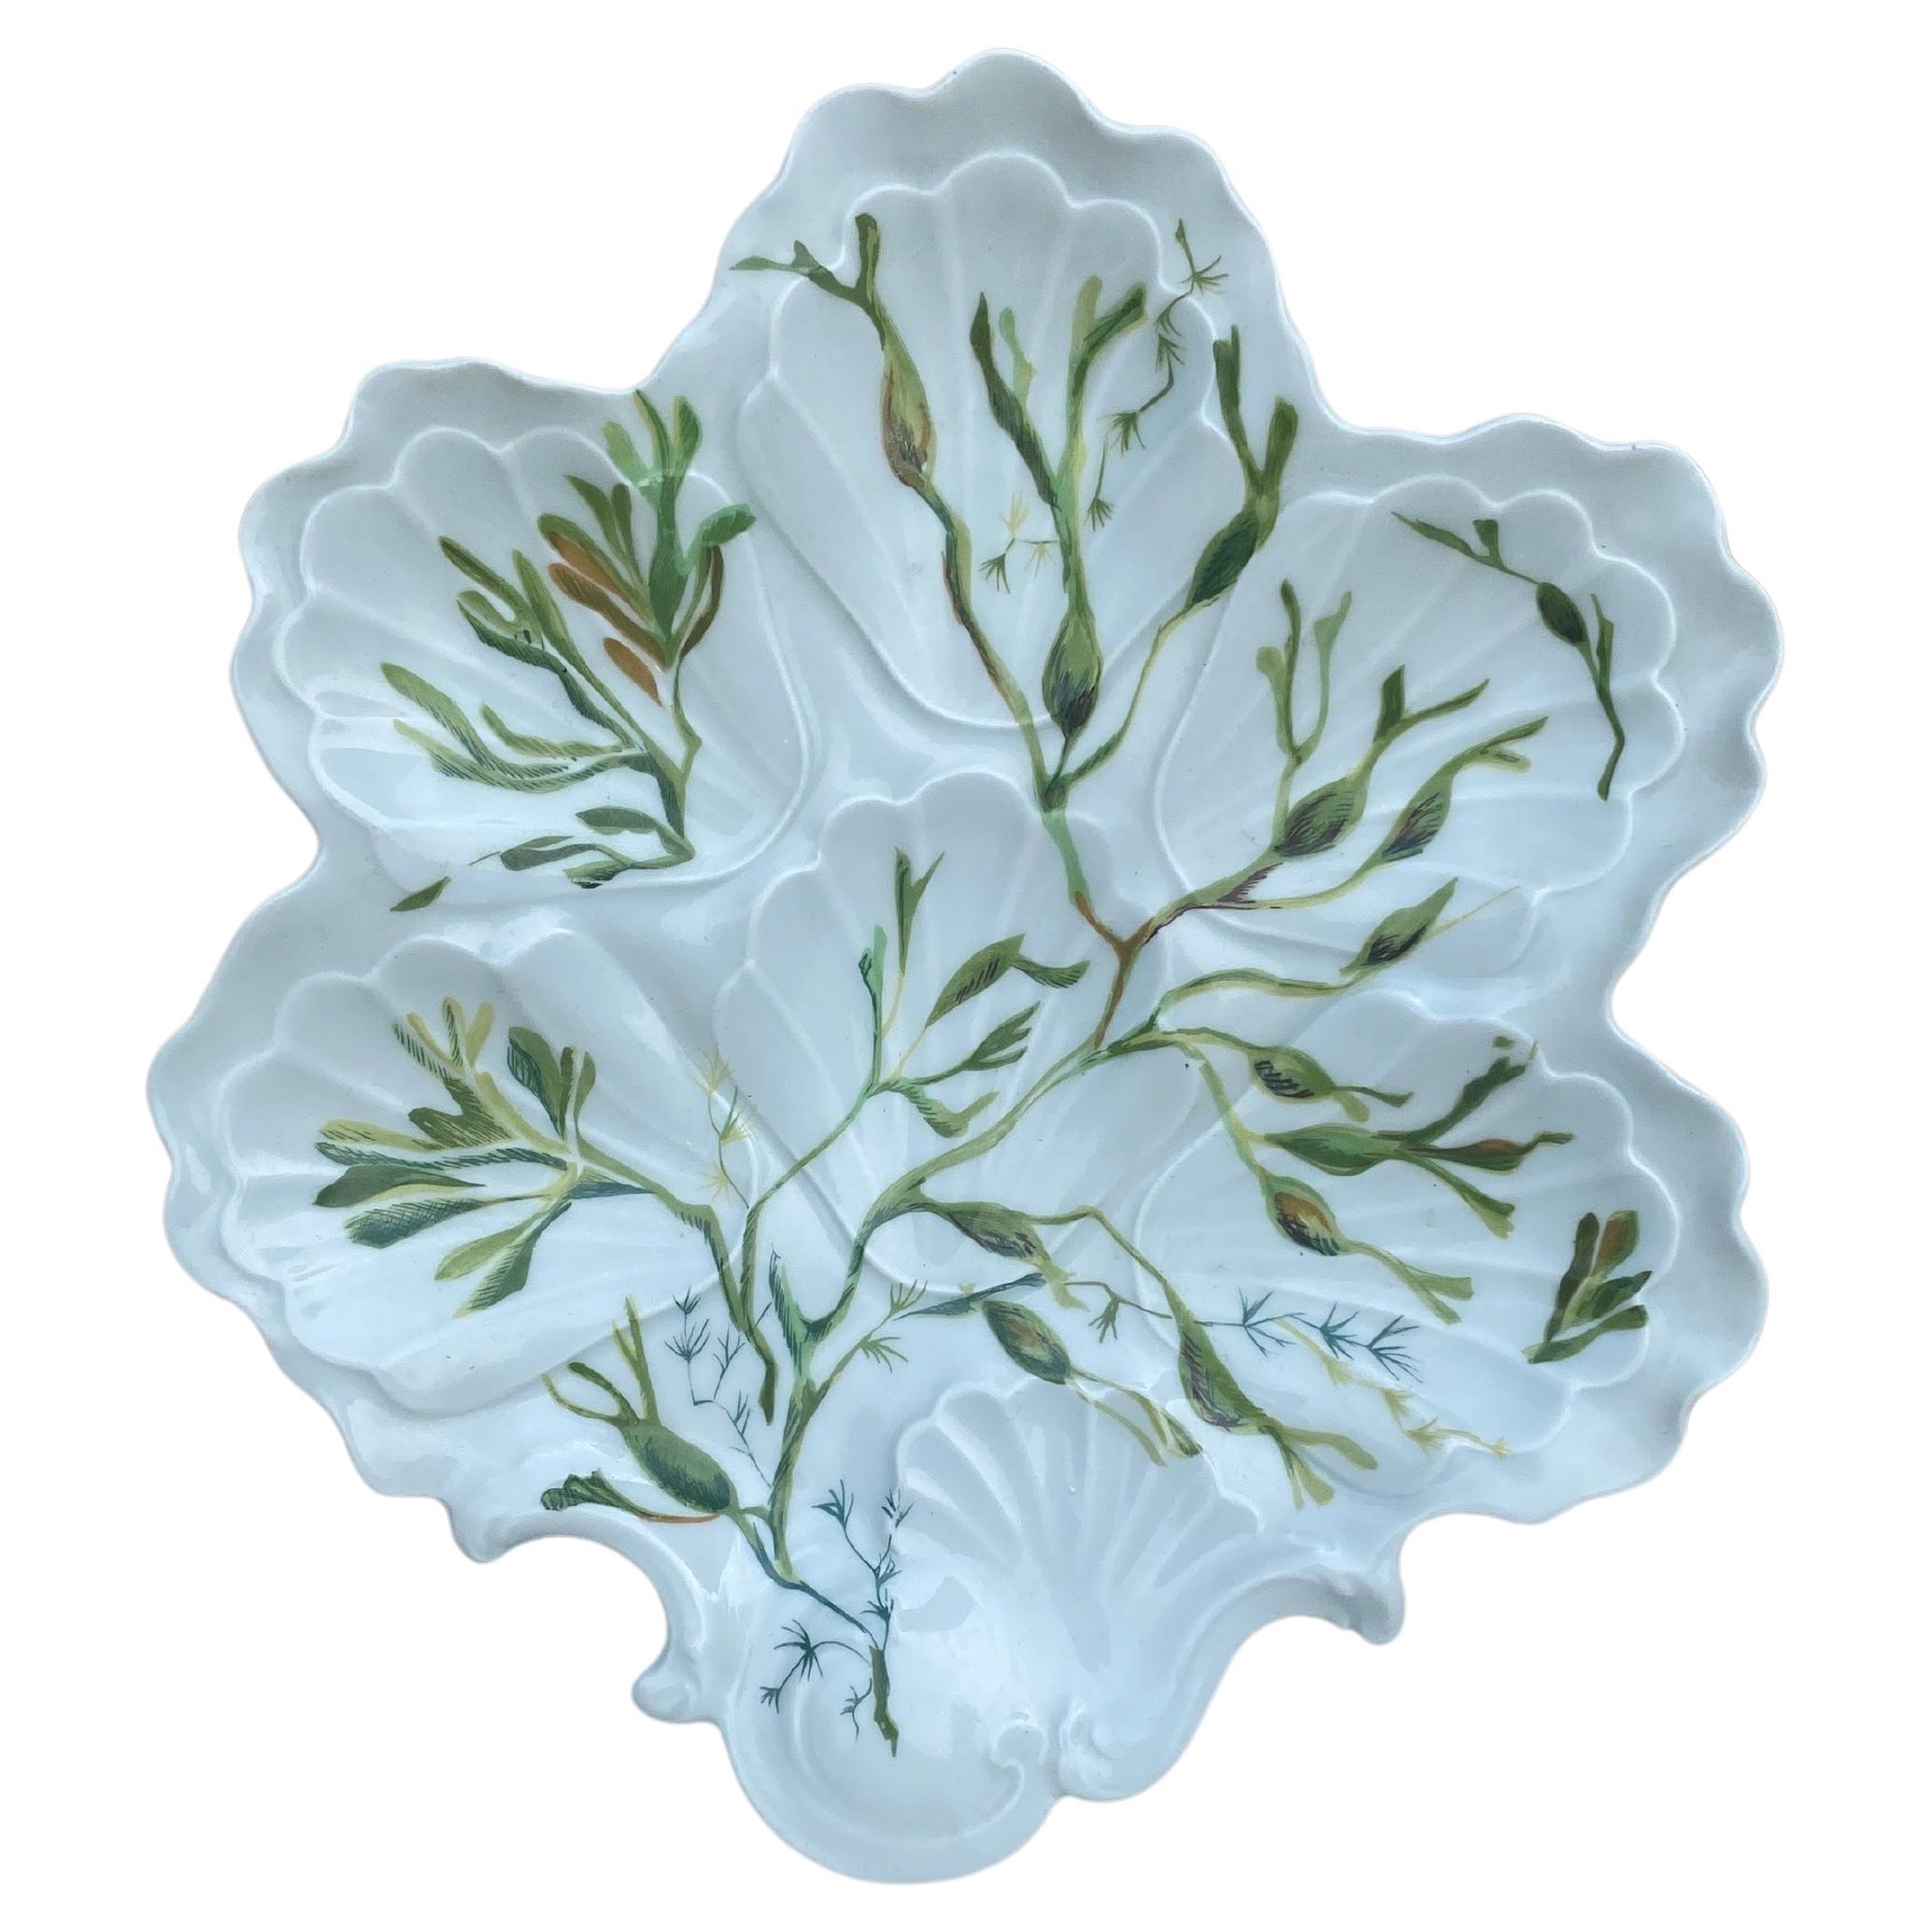 Plato de ostras de porcelana con algas Limoges, hacia 1900